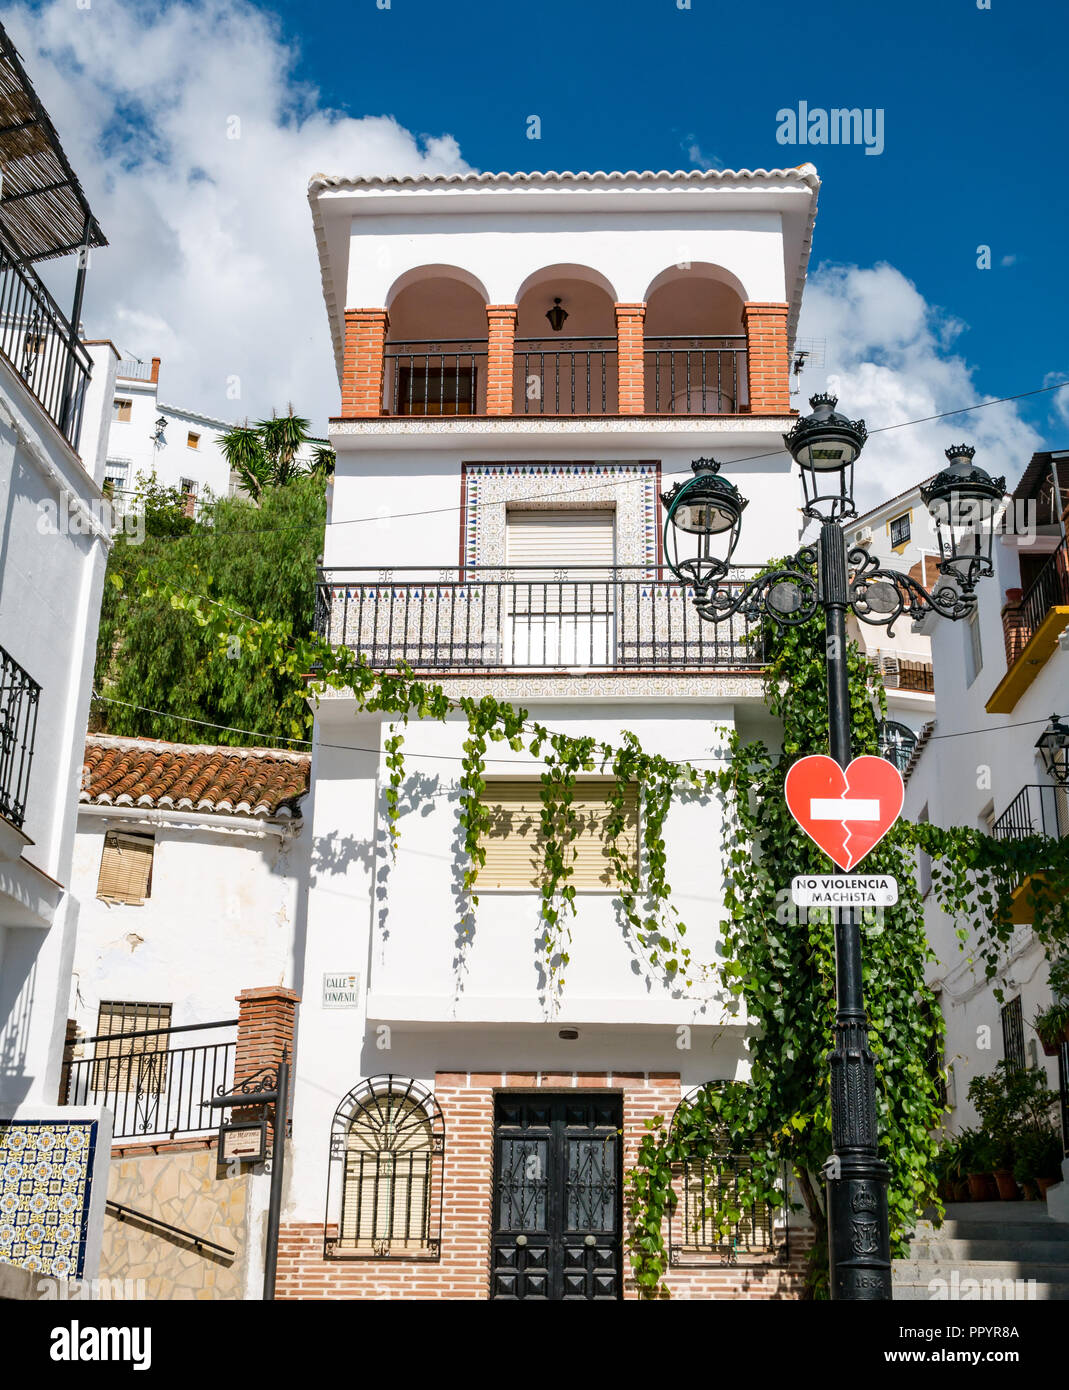 Hübsche weiße Häuser mit Null Toleranz gegen häusliche Gewalt Zeichen in Spanisch, Canillas de Acientuna, Axarquia, Andalusien, Spanien Stockfoto